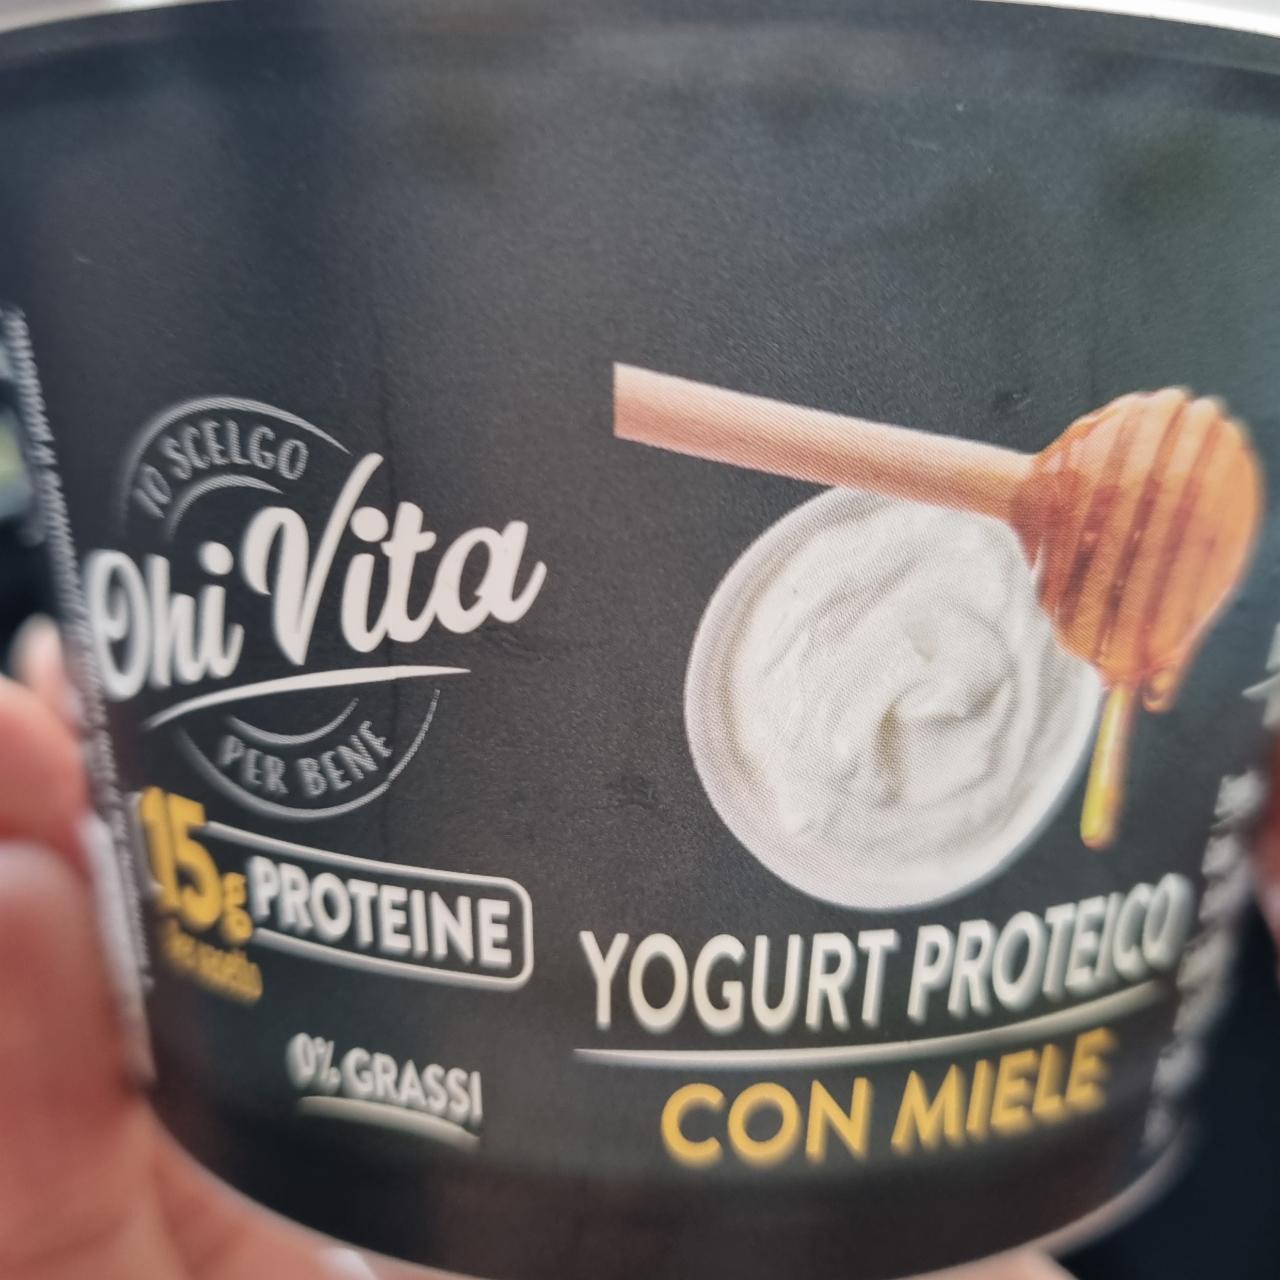 Fotografie - Yogurt proteico con miele Ohi Vita